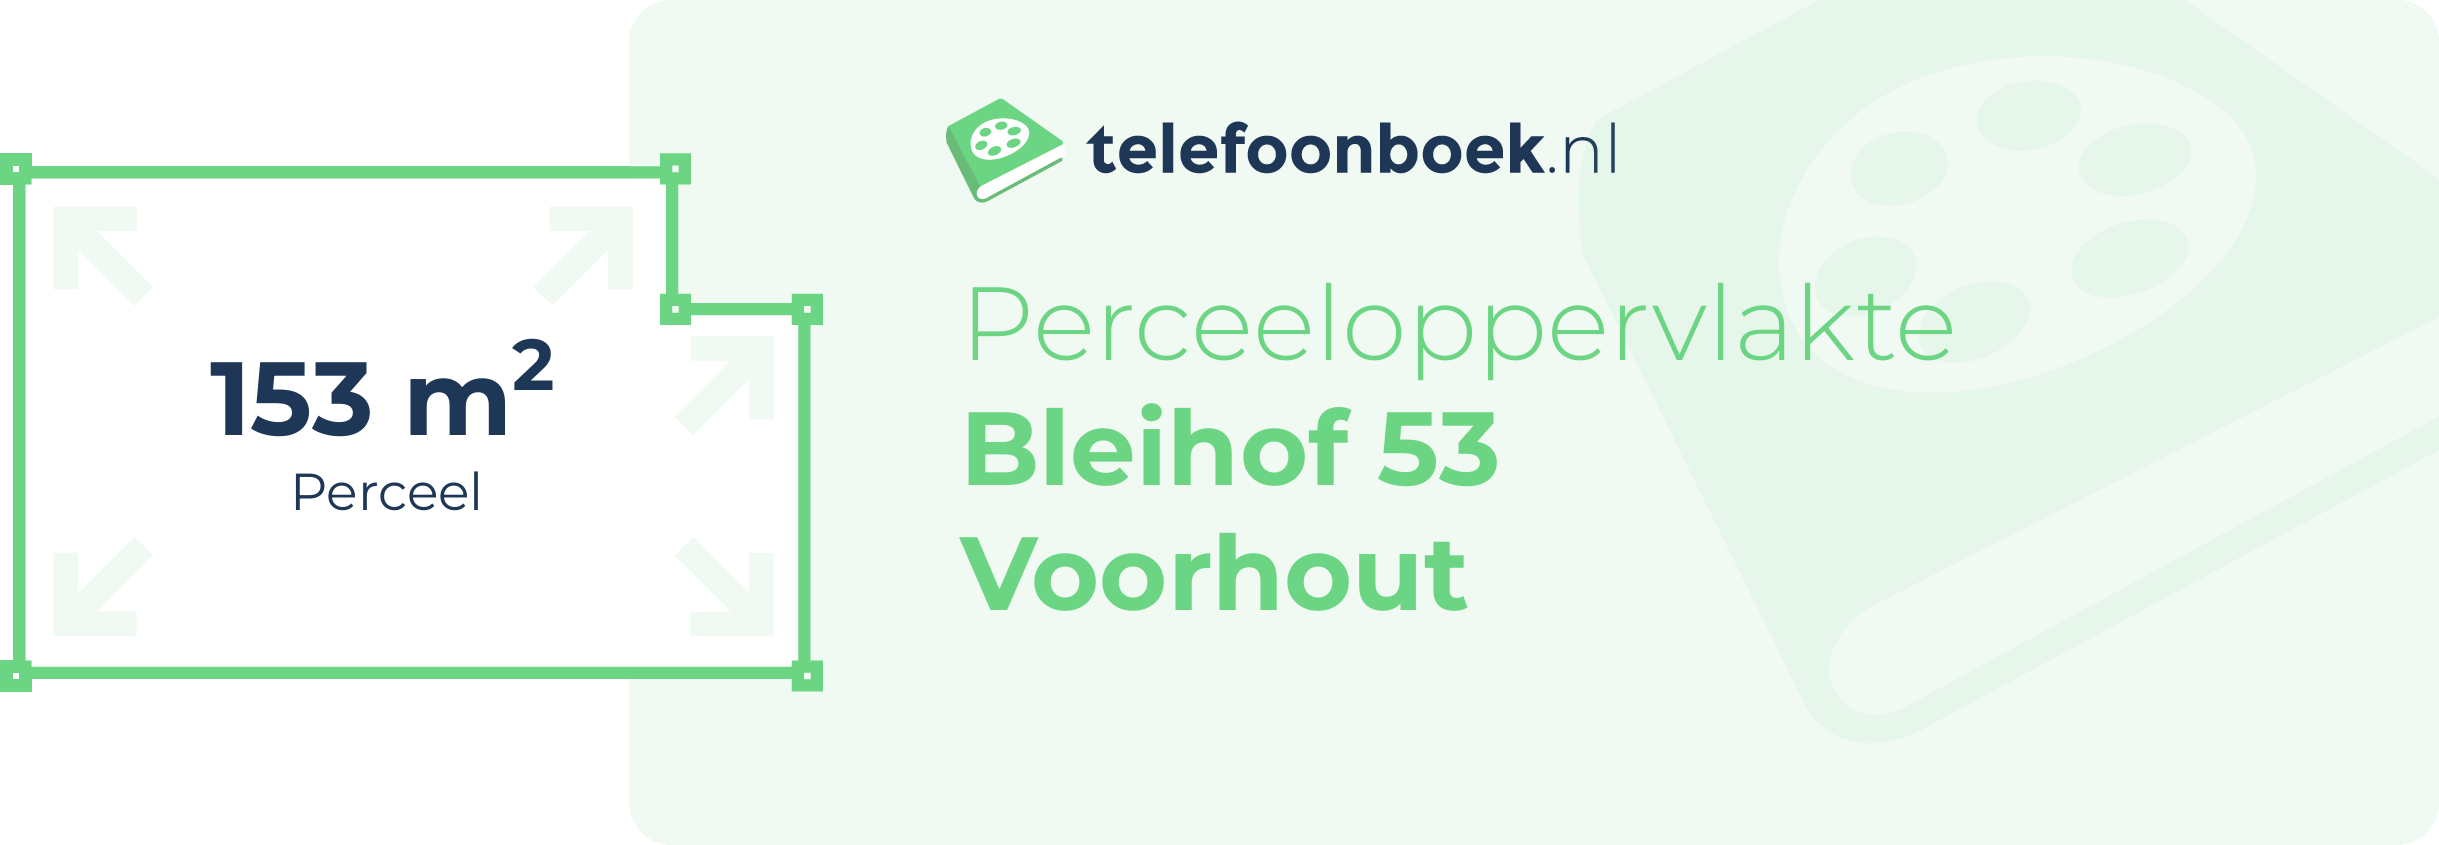 Perceeloppervlakte Bleihof 53 Voorhout